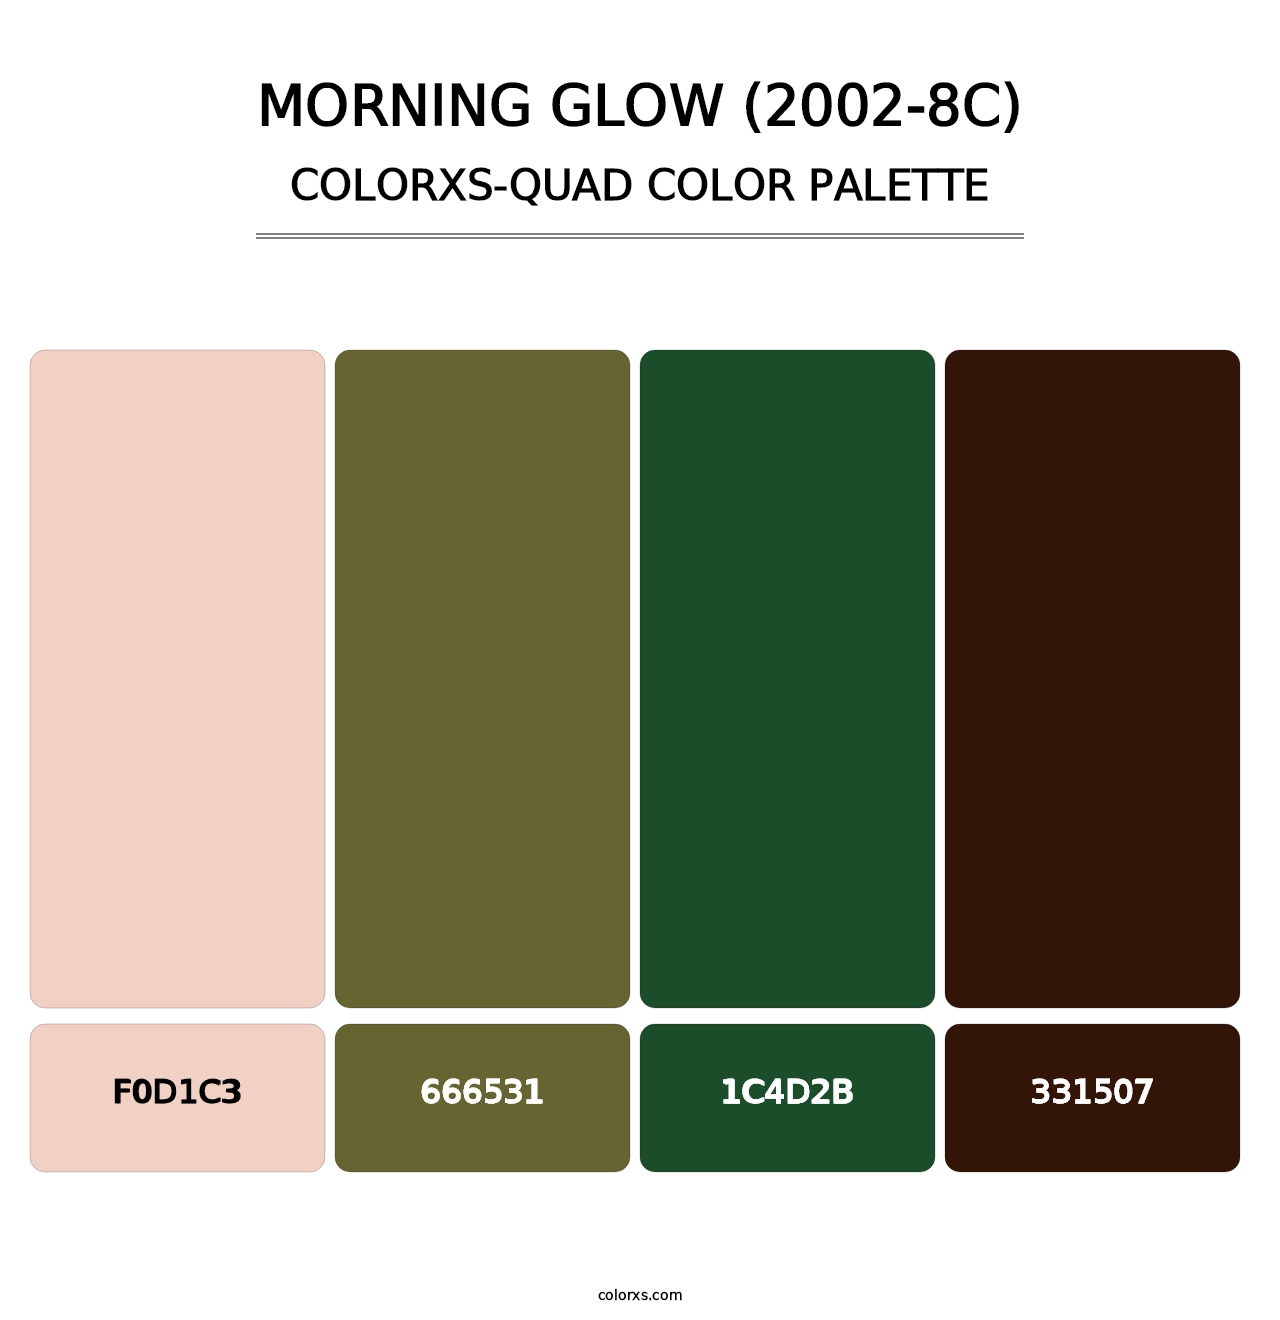 Morning Glow (2002-8C) - Colorxs Quad Palette